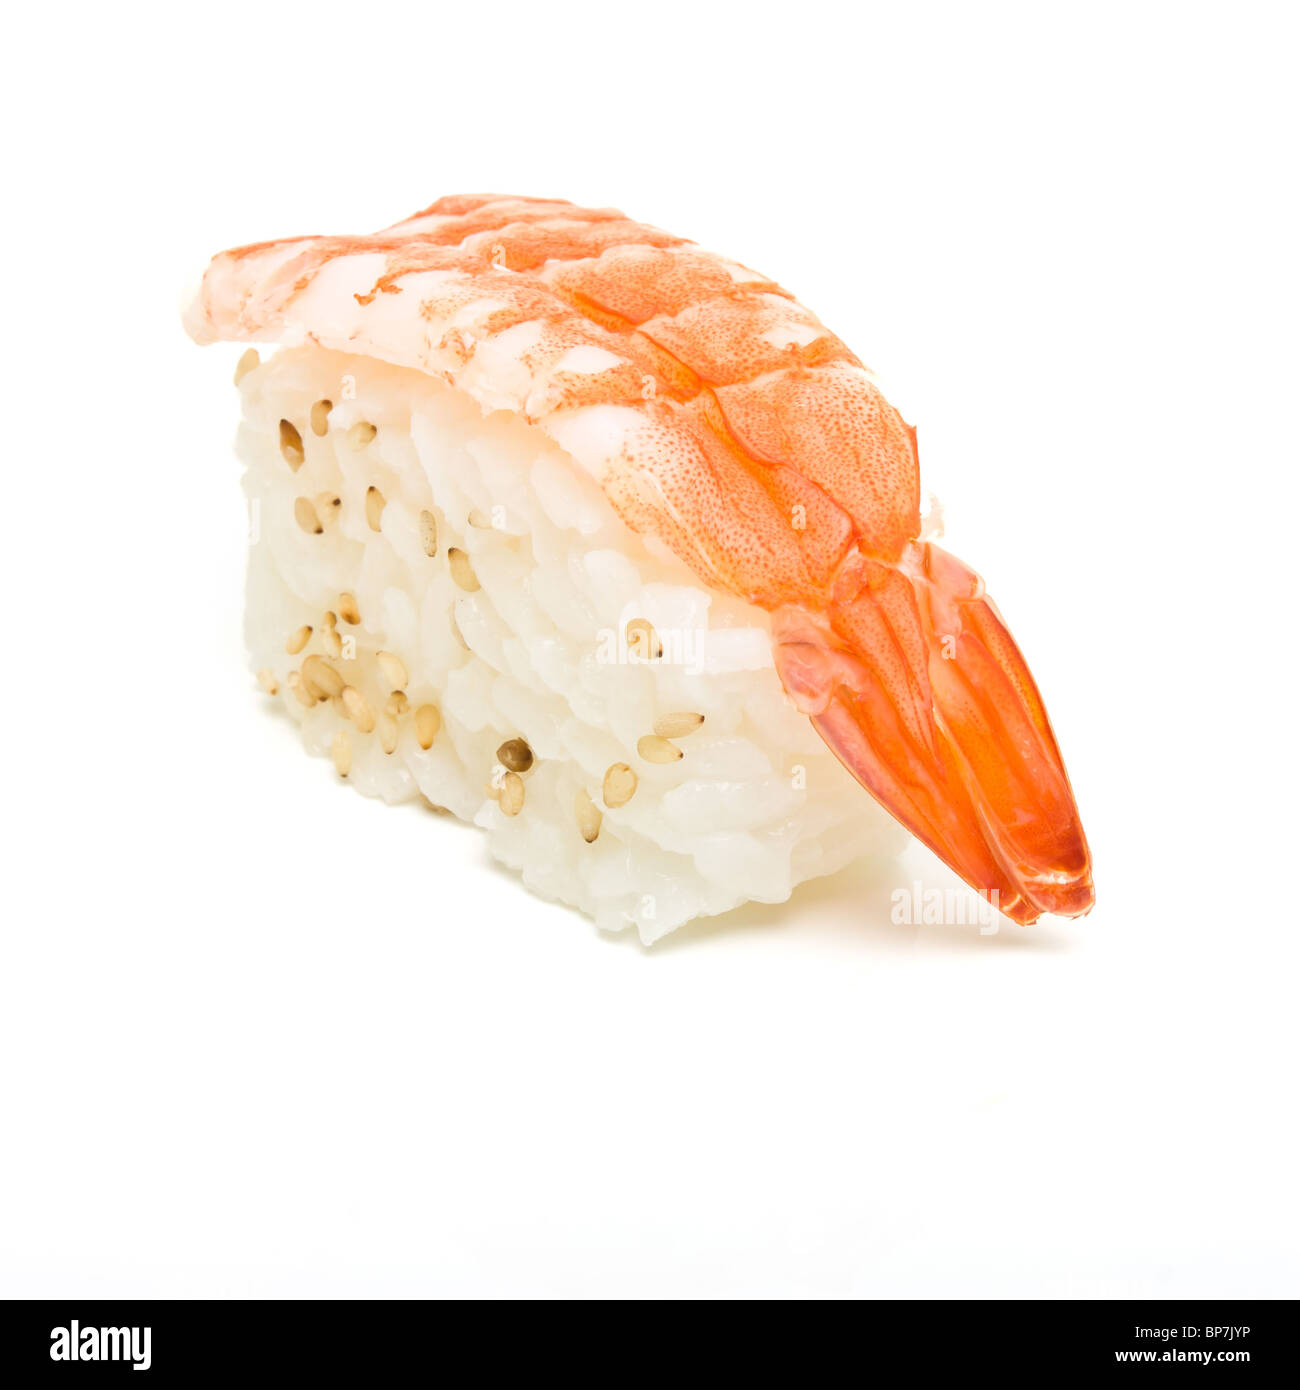 Bloc de sushi de perspective faible contre isolé sur fond blanc. Banque D'Images